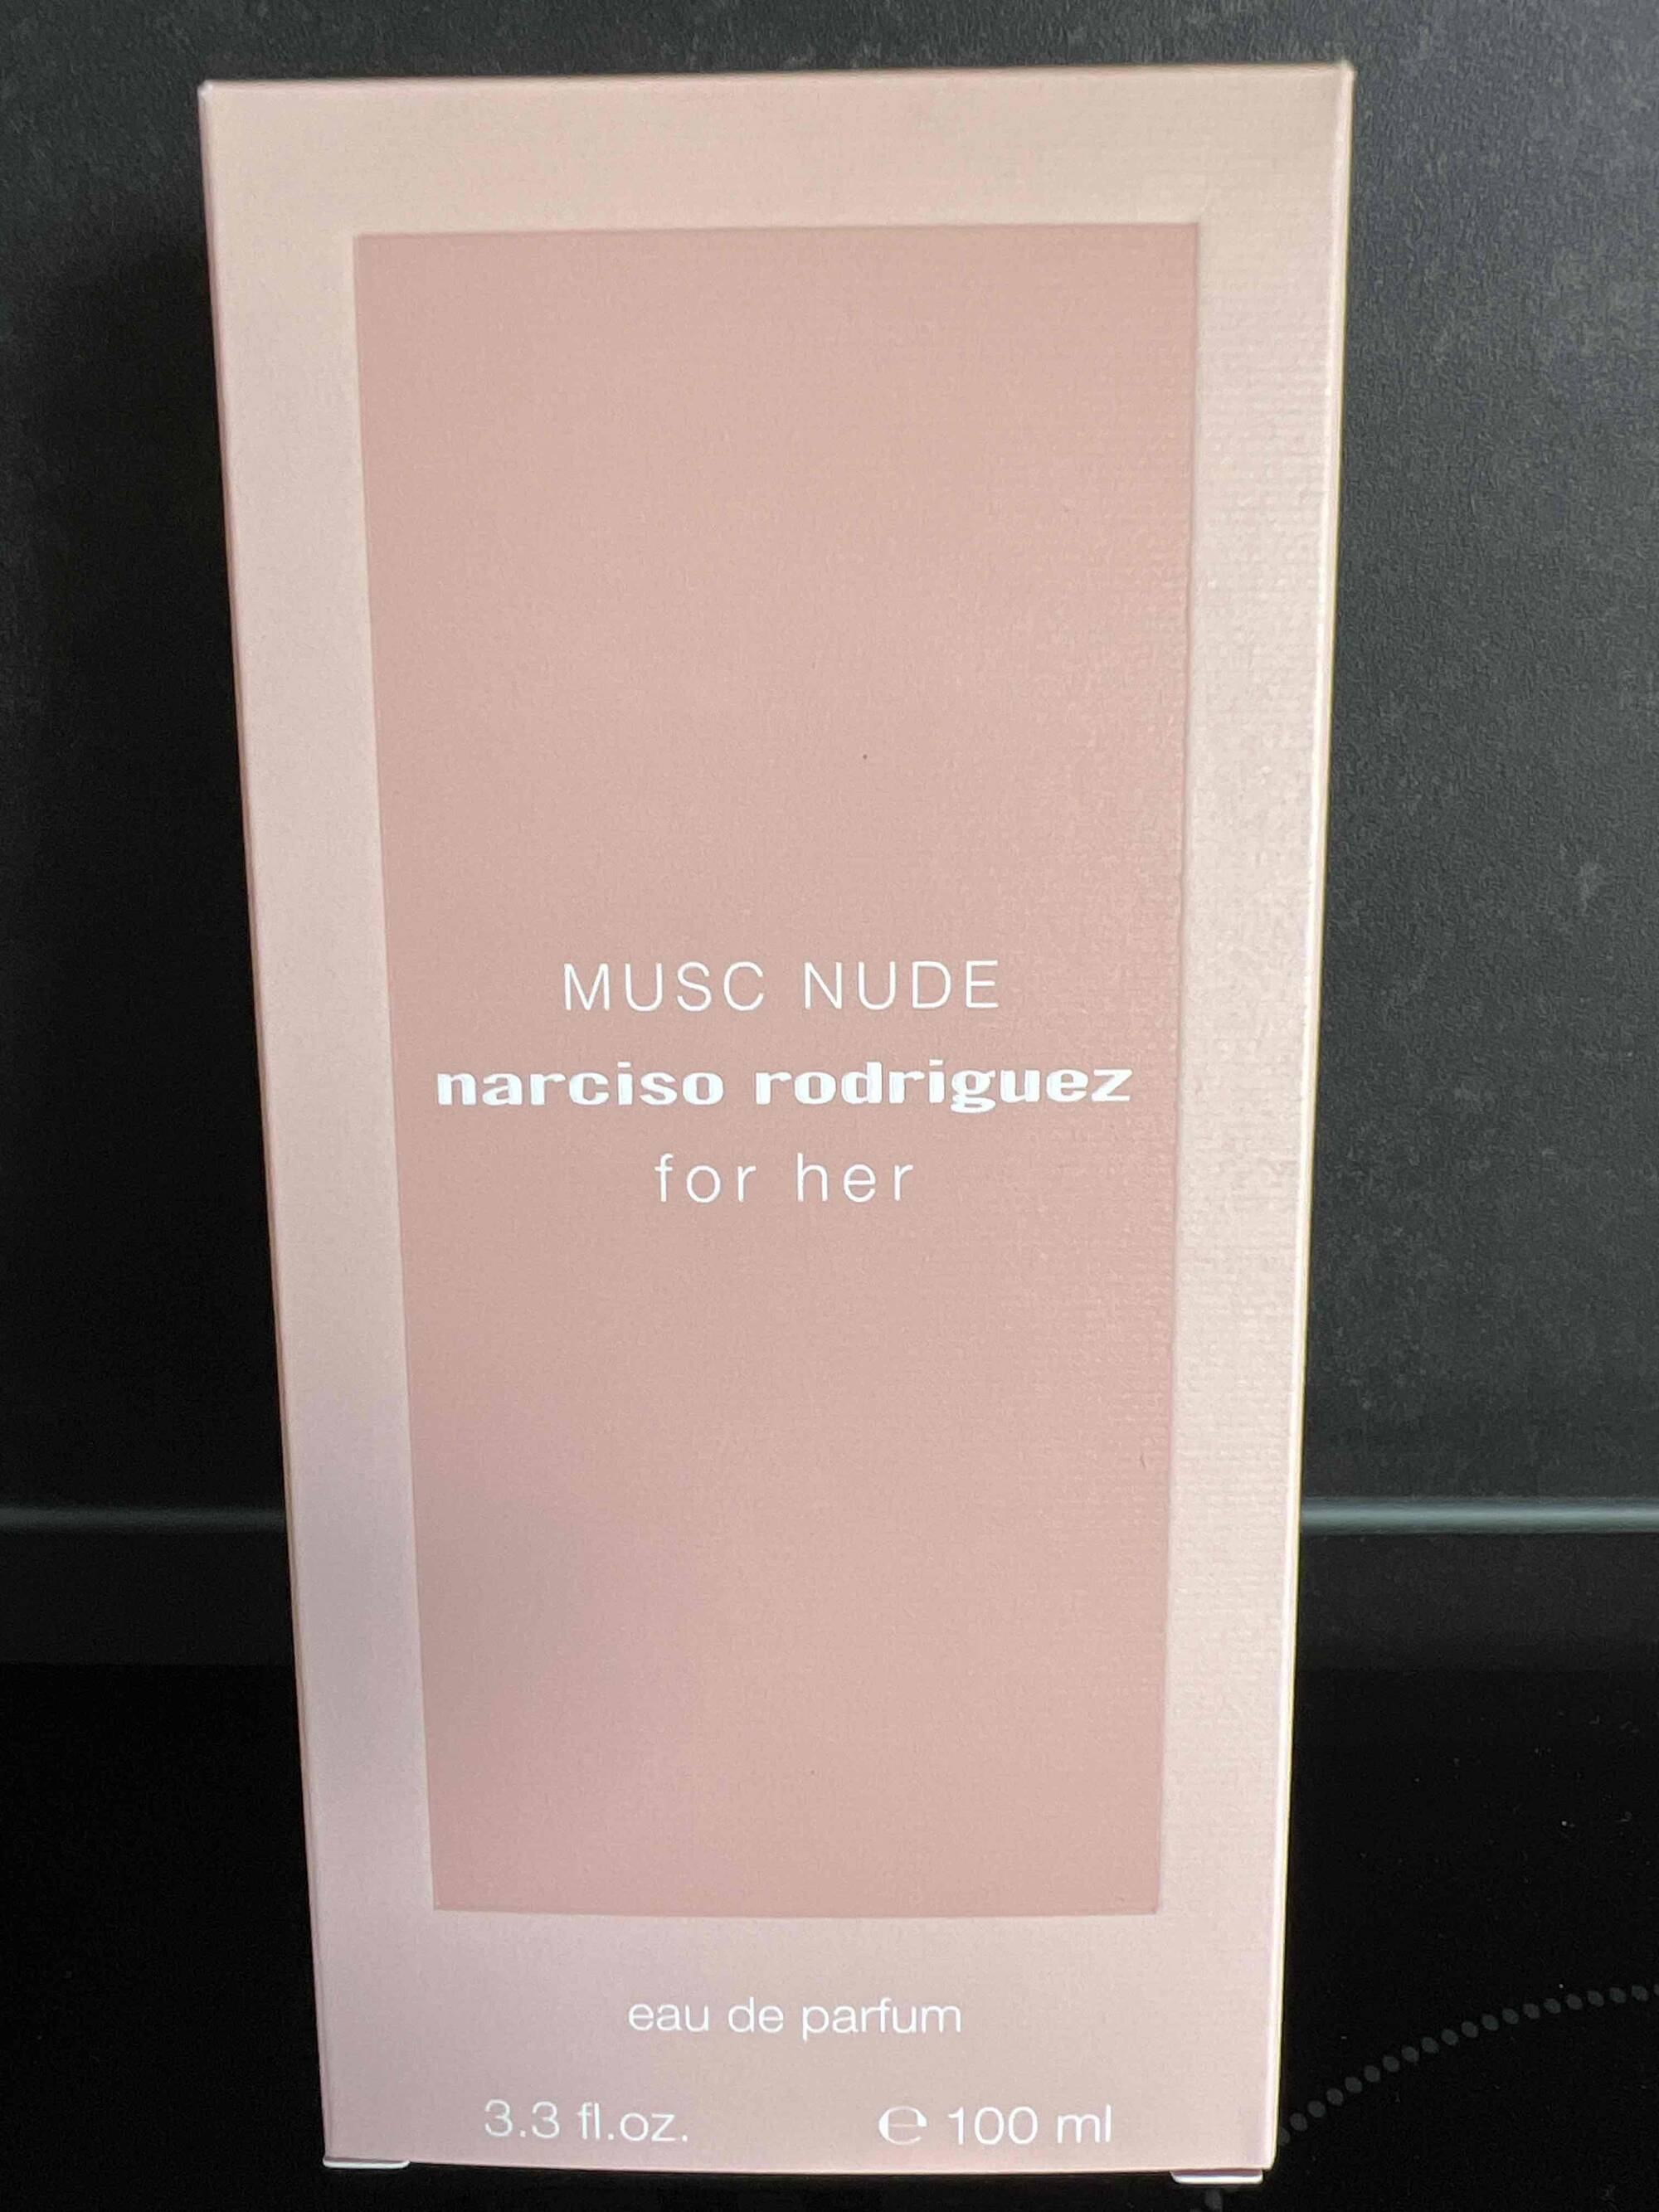 NARCISO RODRIGUEZ - Musc nude for her - Eau de parfum